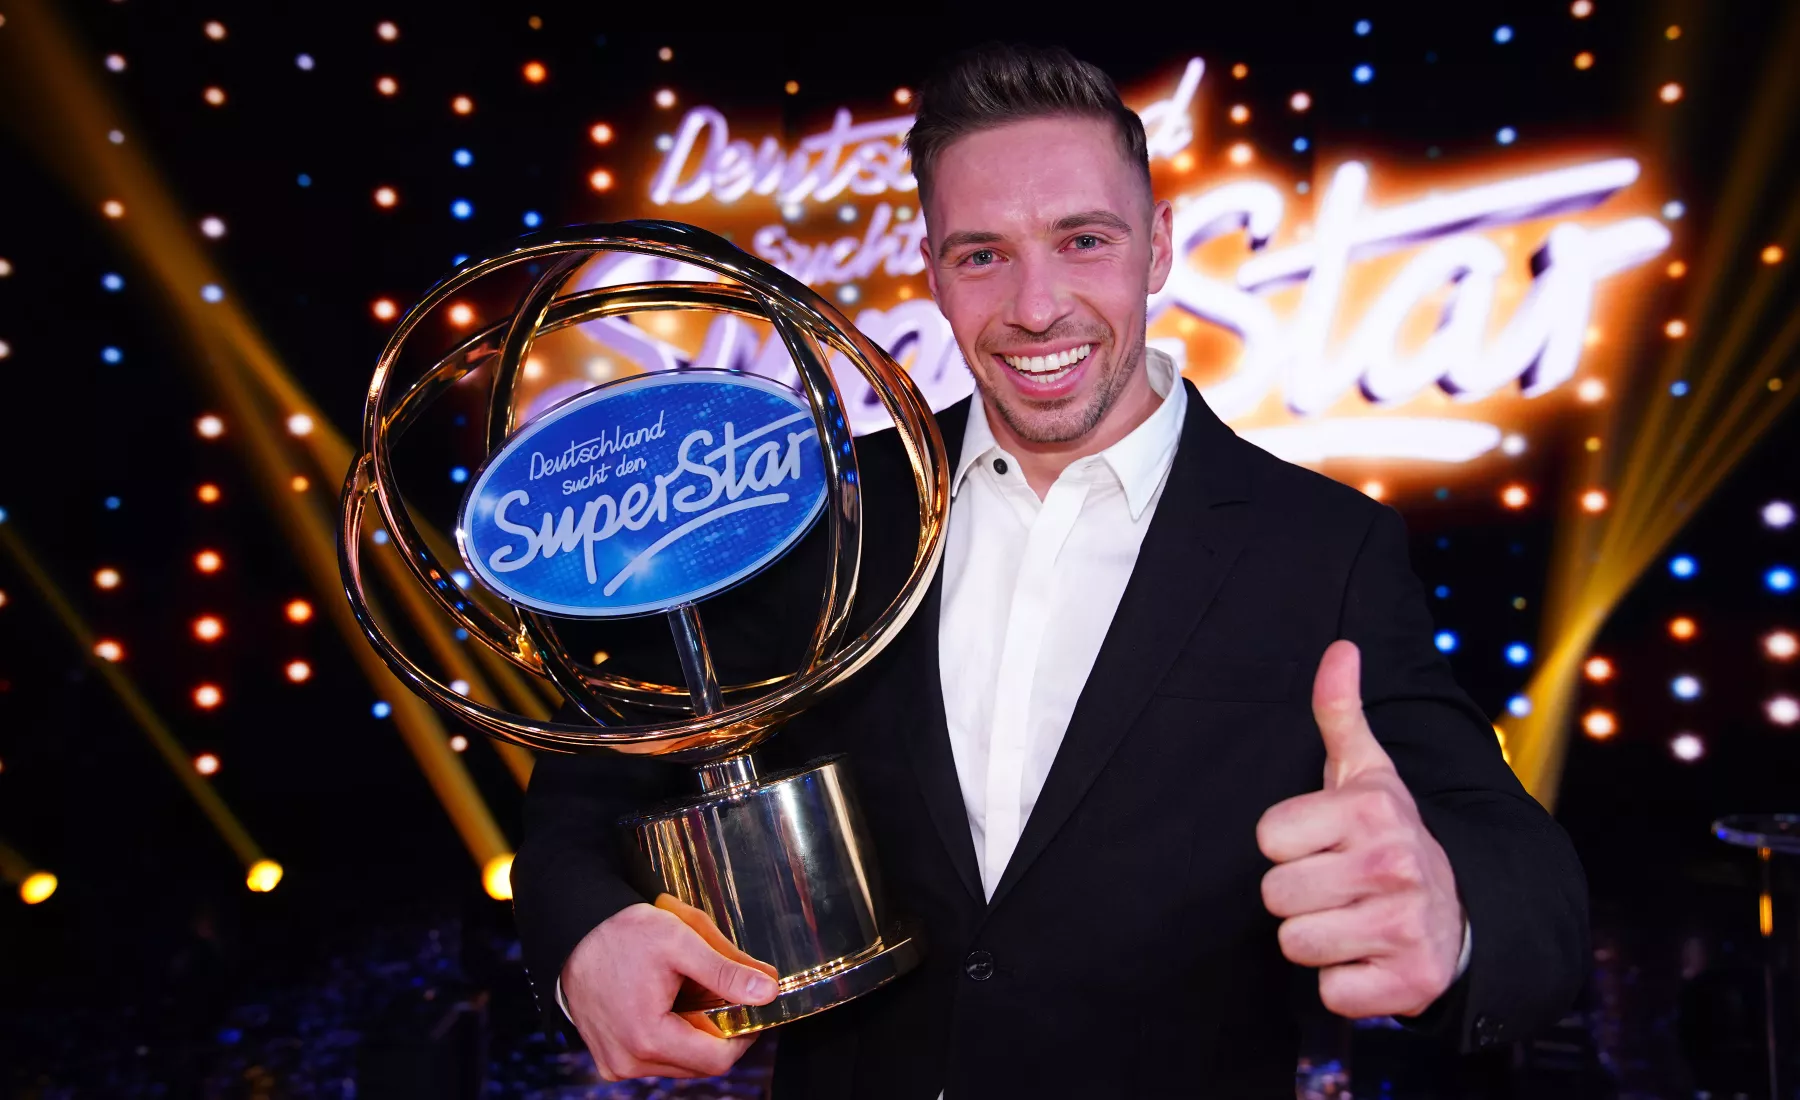 Ramon Roselly, Kandidat der 17. Staffel der Casting-Show "Deutschland sucht den Superstar" (DSDS) freut sich nach dem Finale über seinen Sieg.